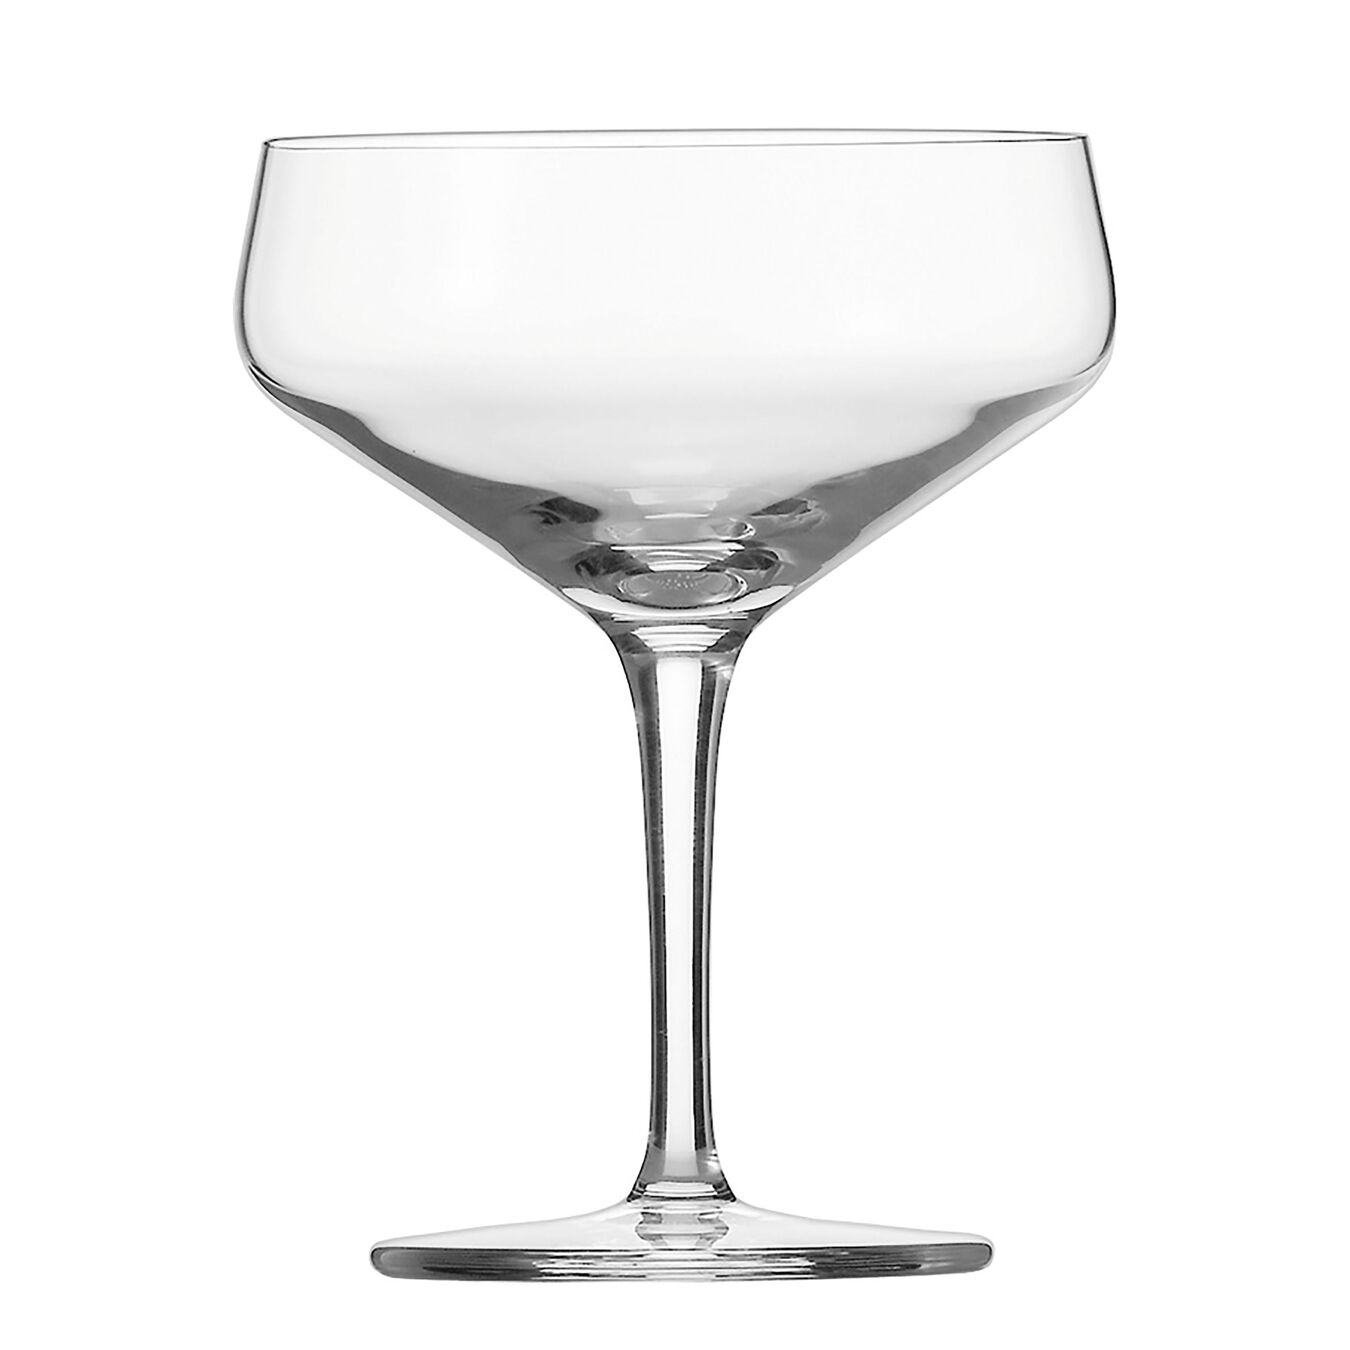 Kokteyl Bardağı | 260 ml,,large 1